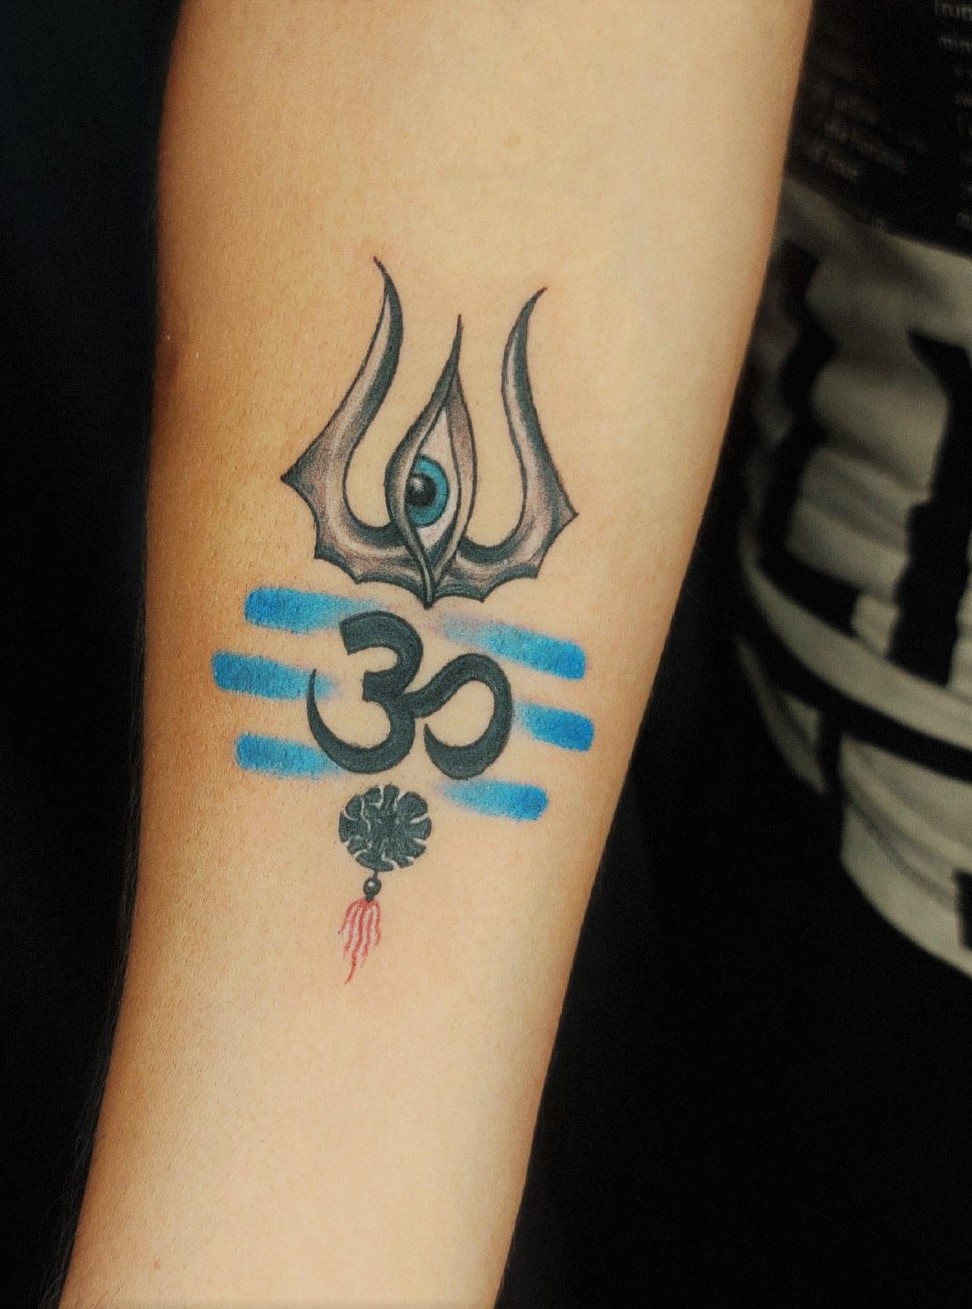 Lord Shiva Trishul and sneak Tattoo by deepak vetal   lordshiva  lordshivatattoo trishul trushultattoo eyes eyetattoo sneaktattoo   Instagram